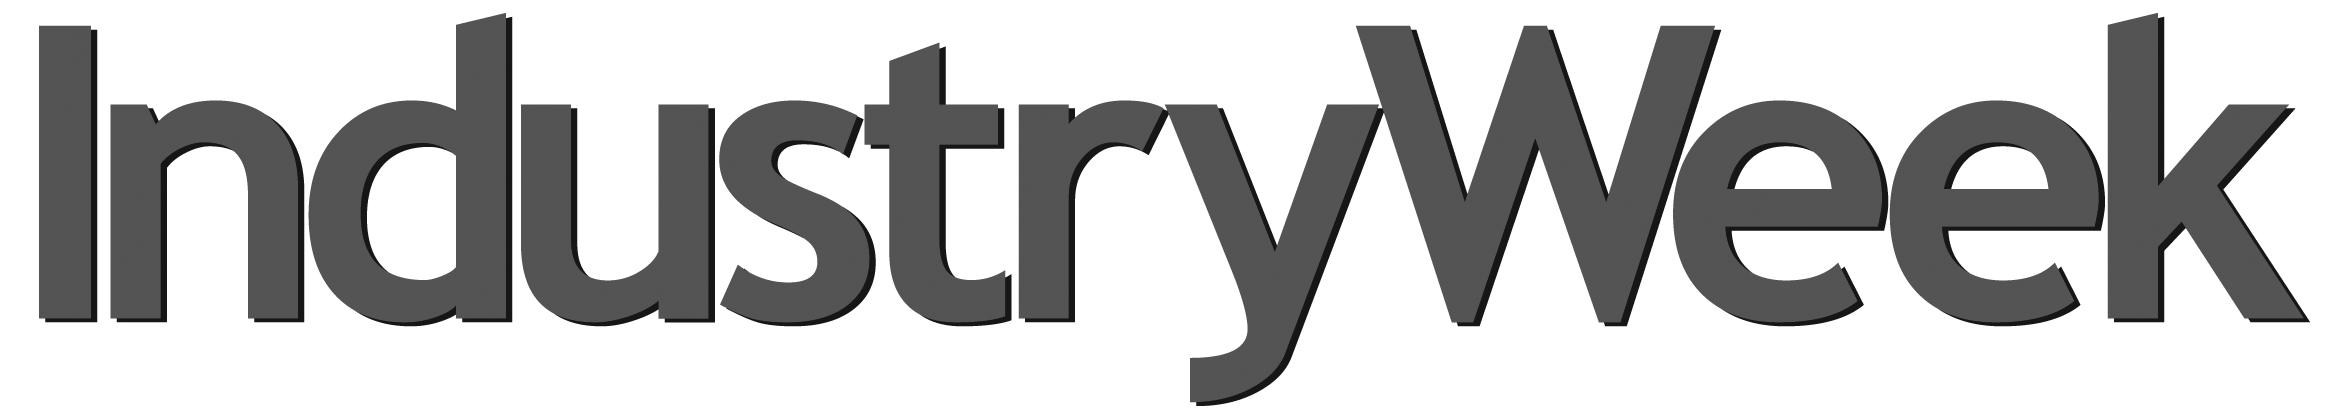 Industry_Week_logo grey.png